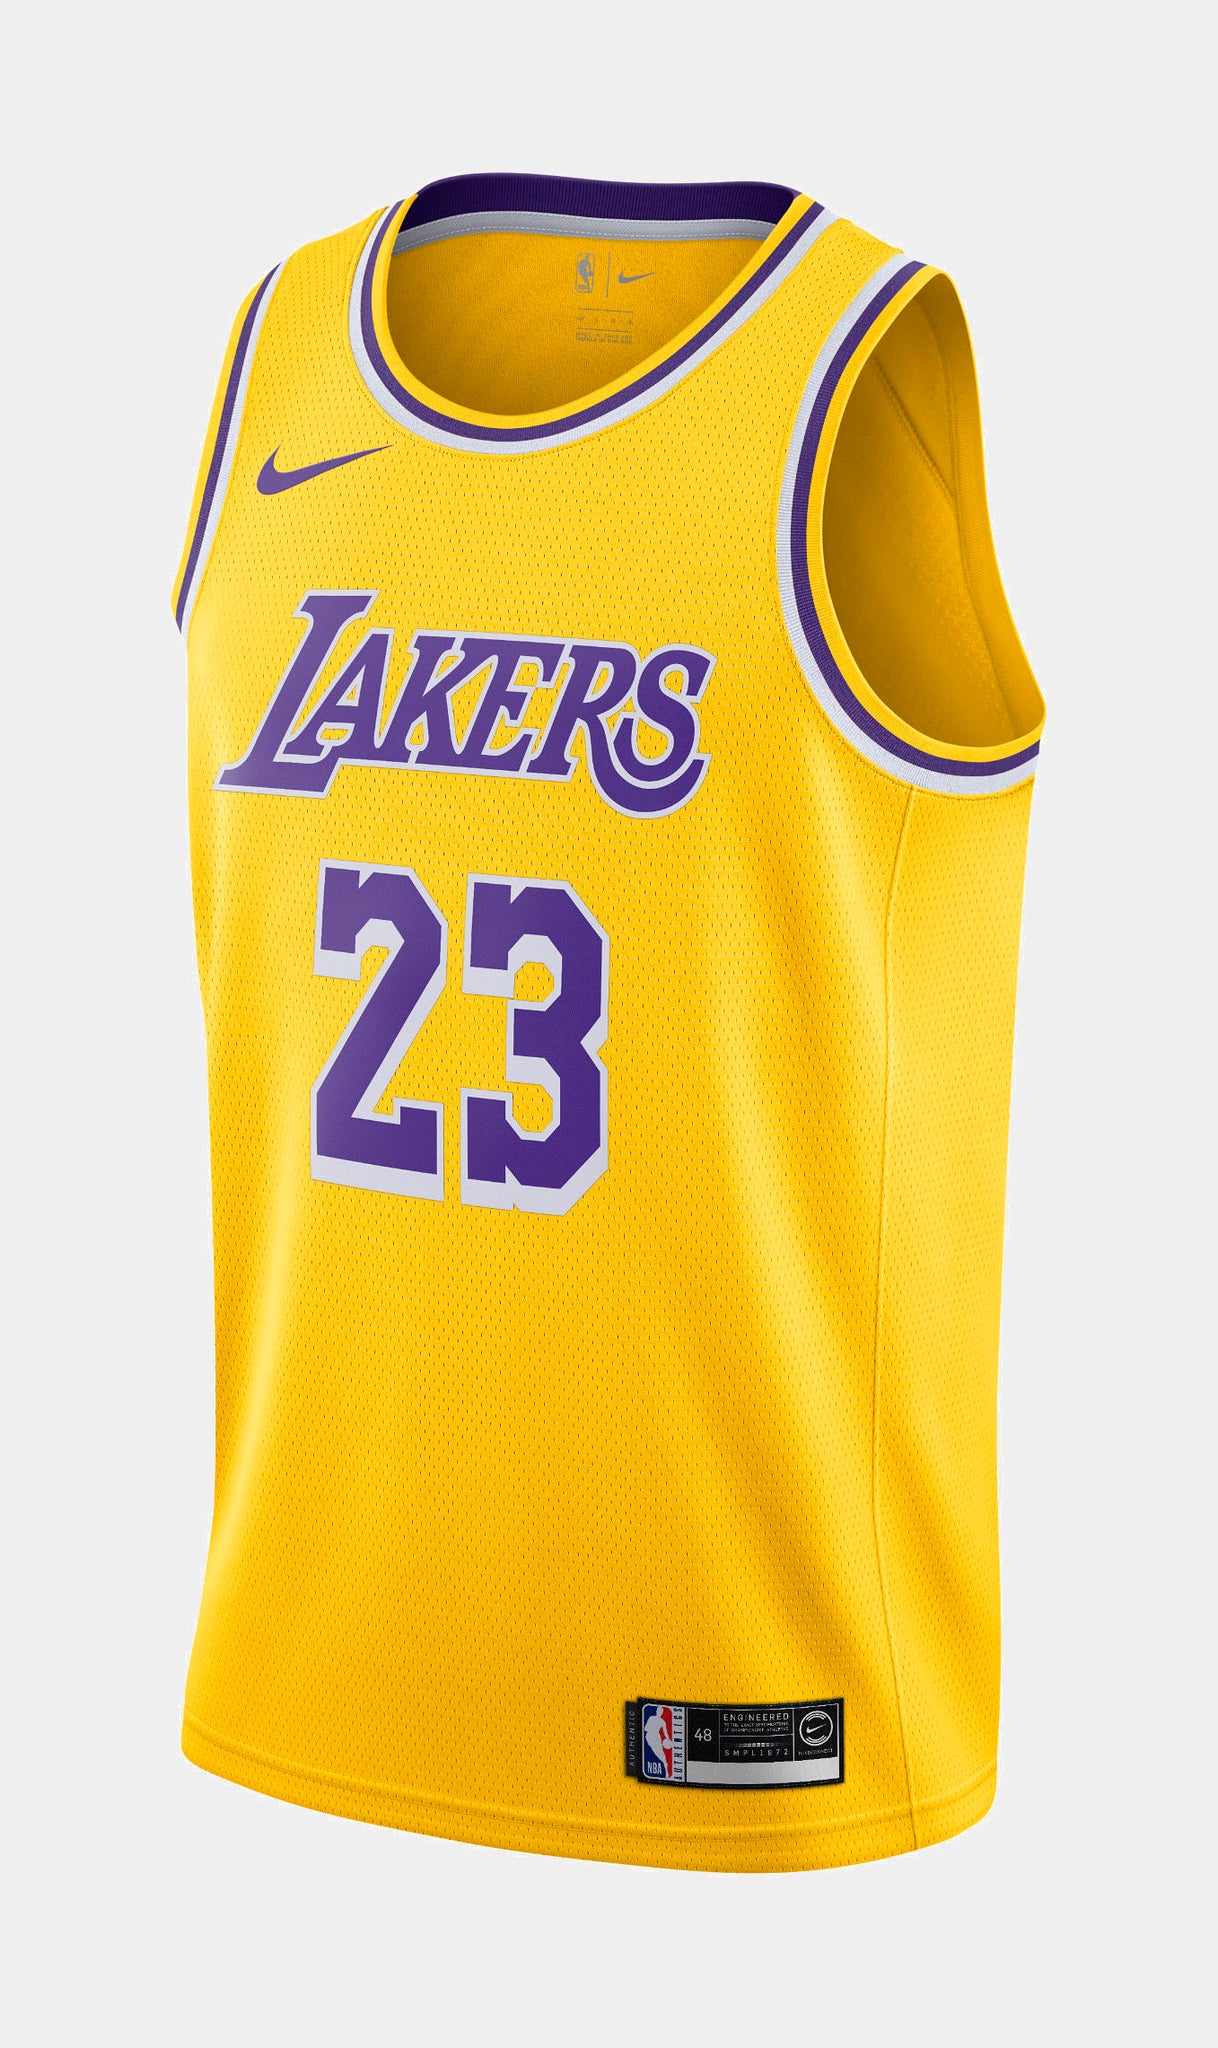 Nike LeBron James 23 NBA Swingman Men's LA Lakers Jersey Size 48 L  Basketball